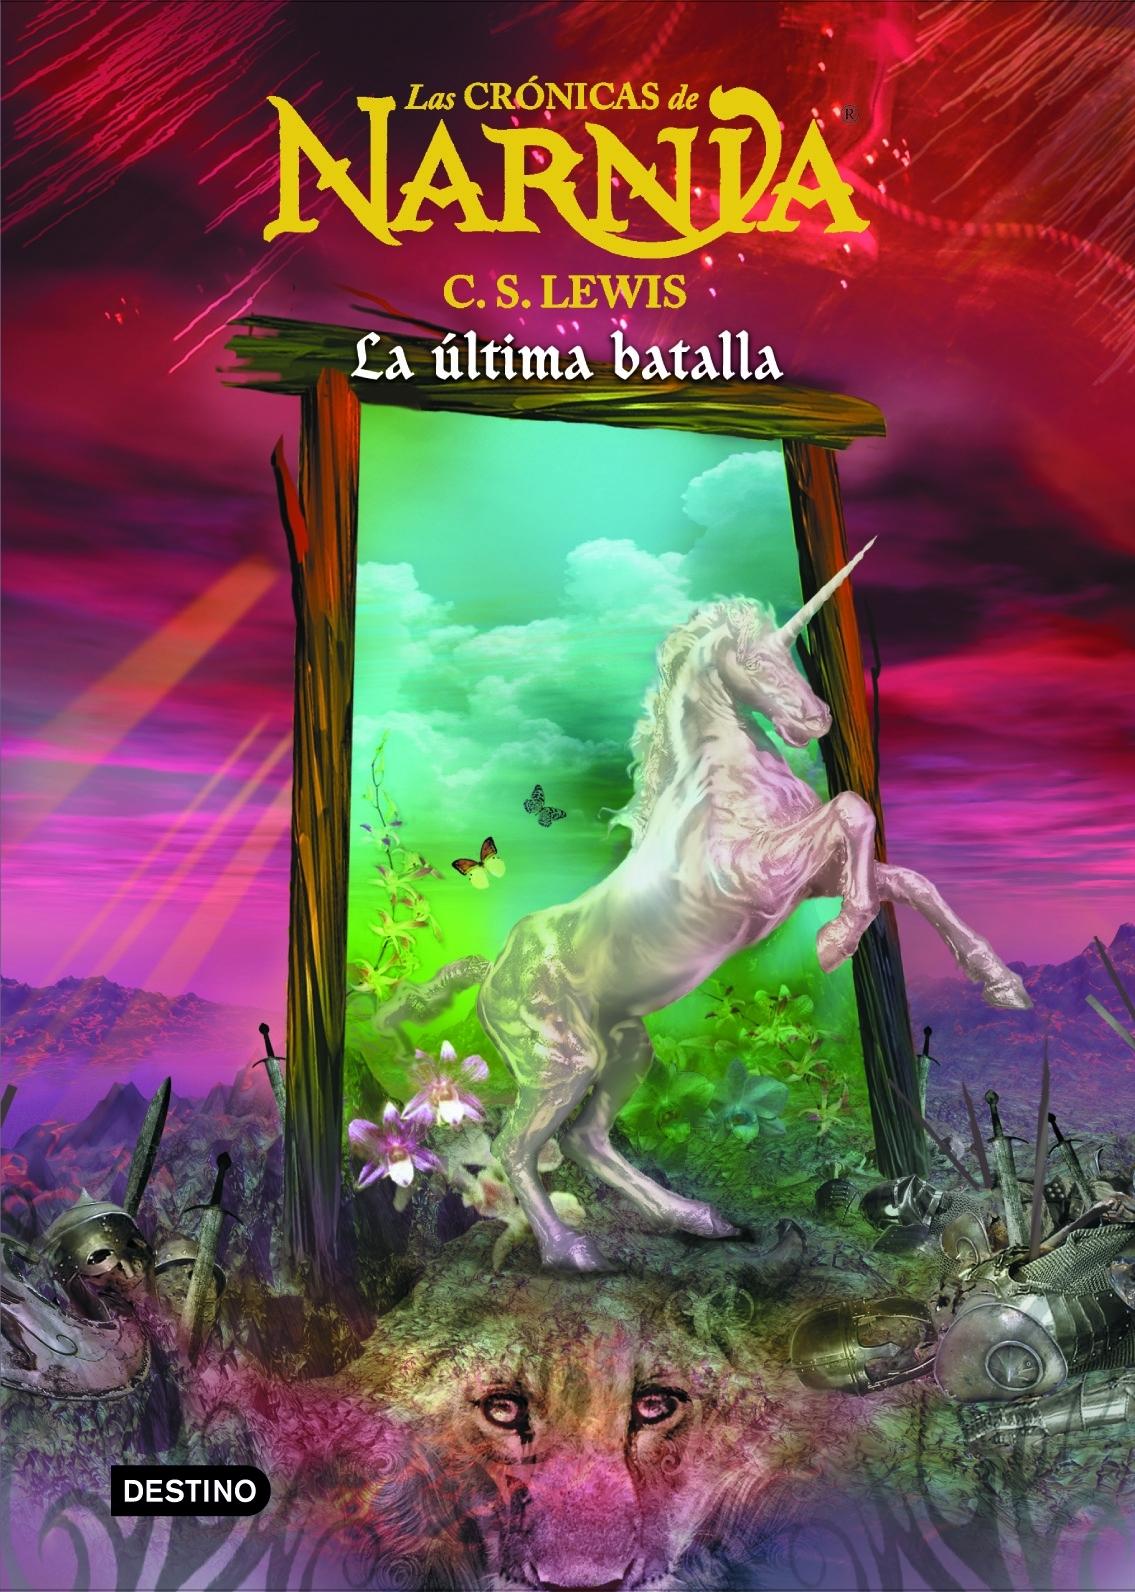 Las Crónicas de Narnia 7 "La última batalla"